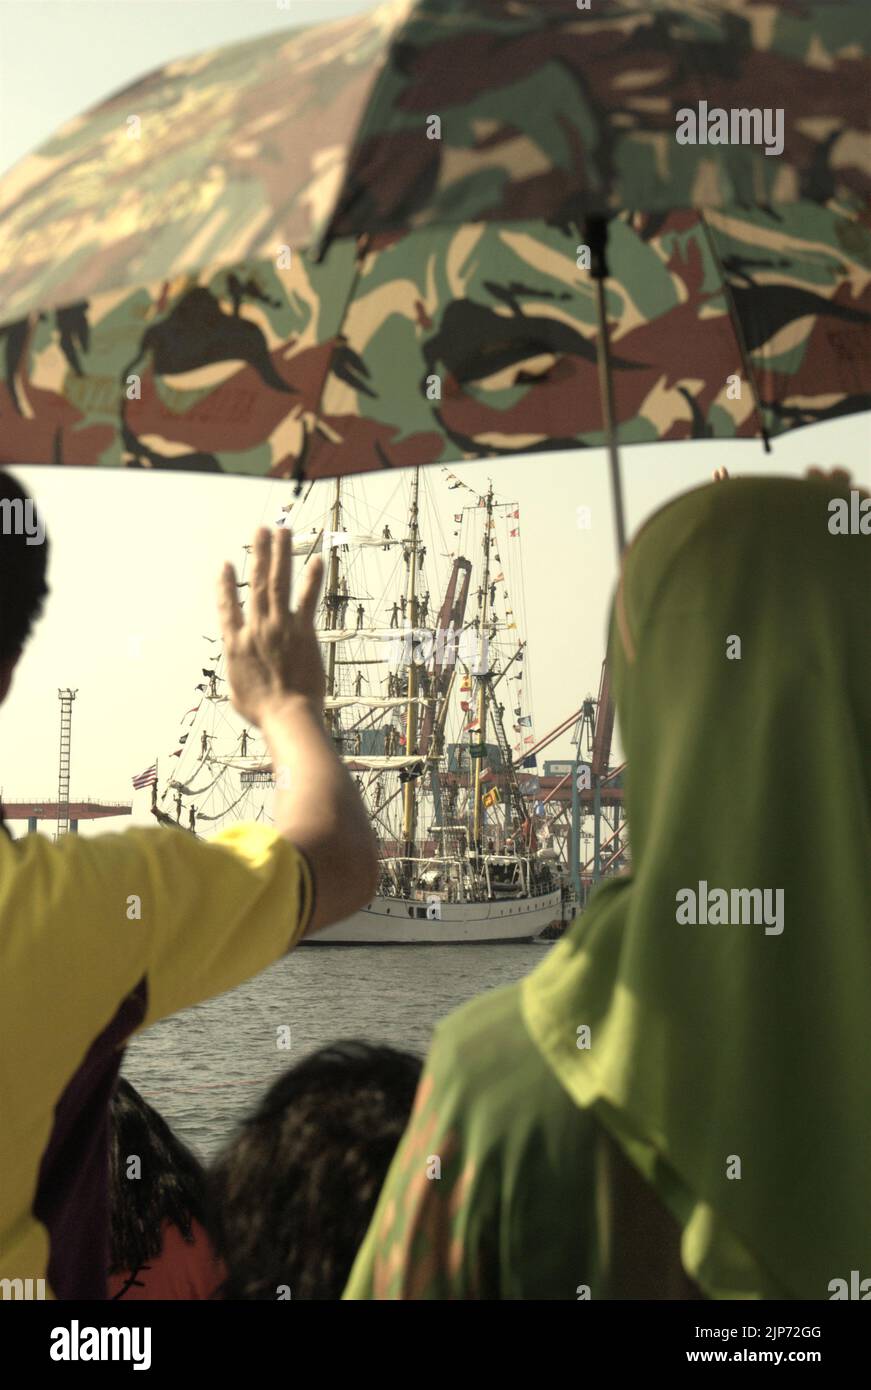 Famiglie e visitatori che si sono mossi da Arrivederci a KRI Dewaruci (Dewa Ruci), una nave alta indonesiana, come goletta di tipo barquentino che inizia a navigare dopo essere stata aperta al pubblico al porto di Kolinlamil (porto della Marina) a Tanjung Priok, nel nord di Giacarta, Indonesia. Foto Stock